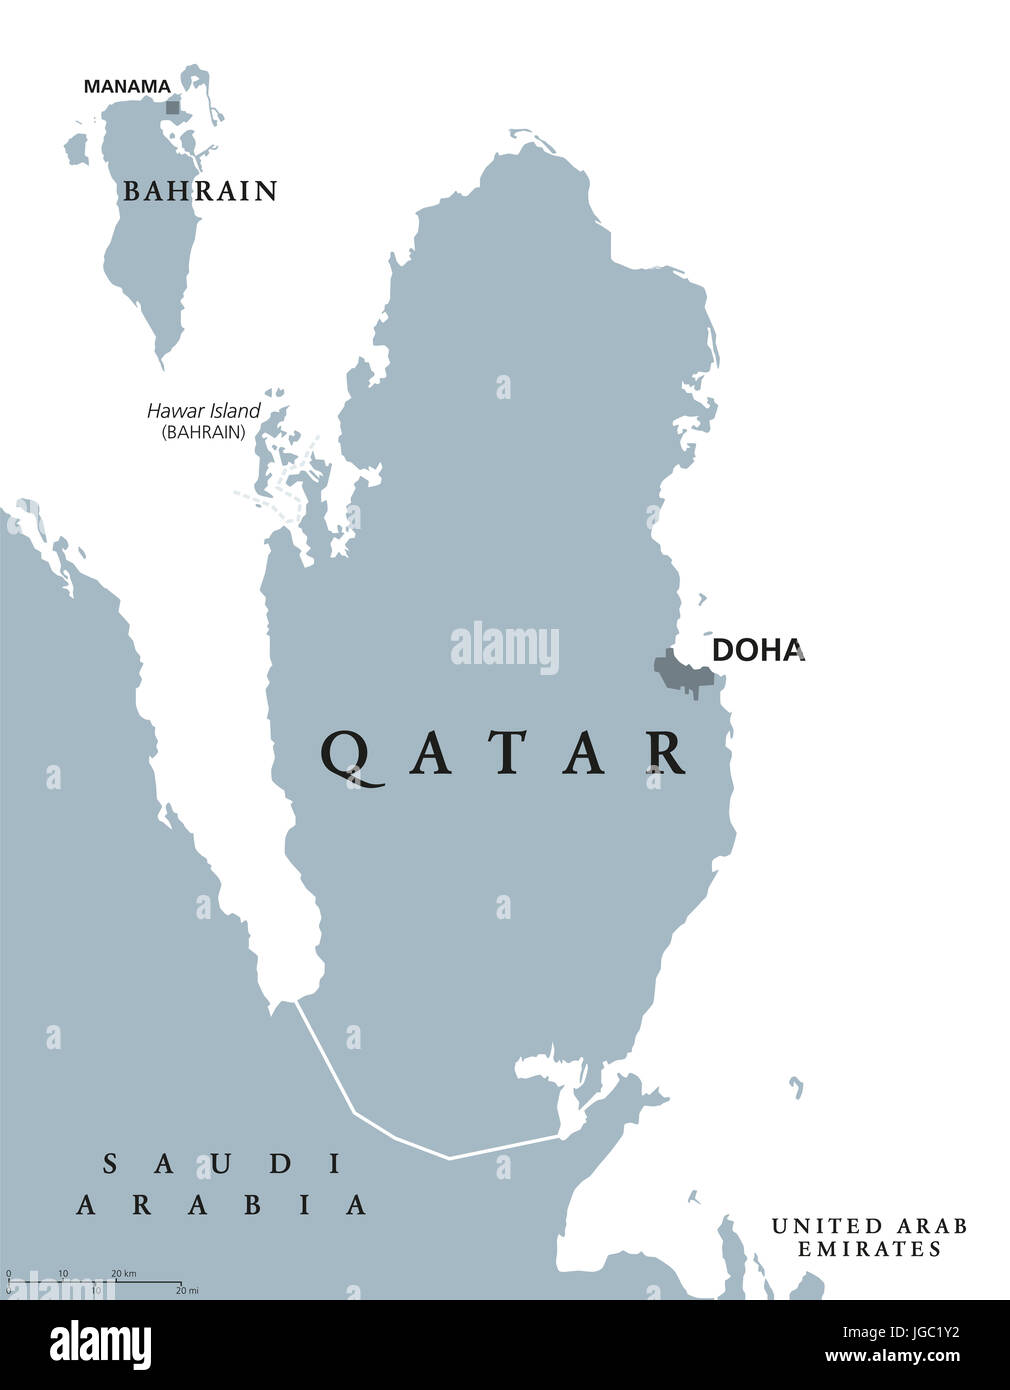 Qatar mapa político con capital de Doha. Estado y país soberano en Asia occidental en la costa noreste de la Península Arábiga. Ilustración de color gris. Foto de stock